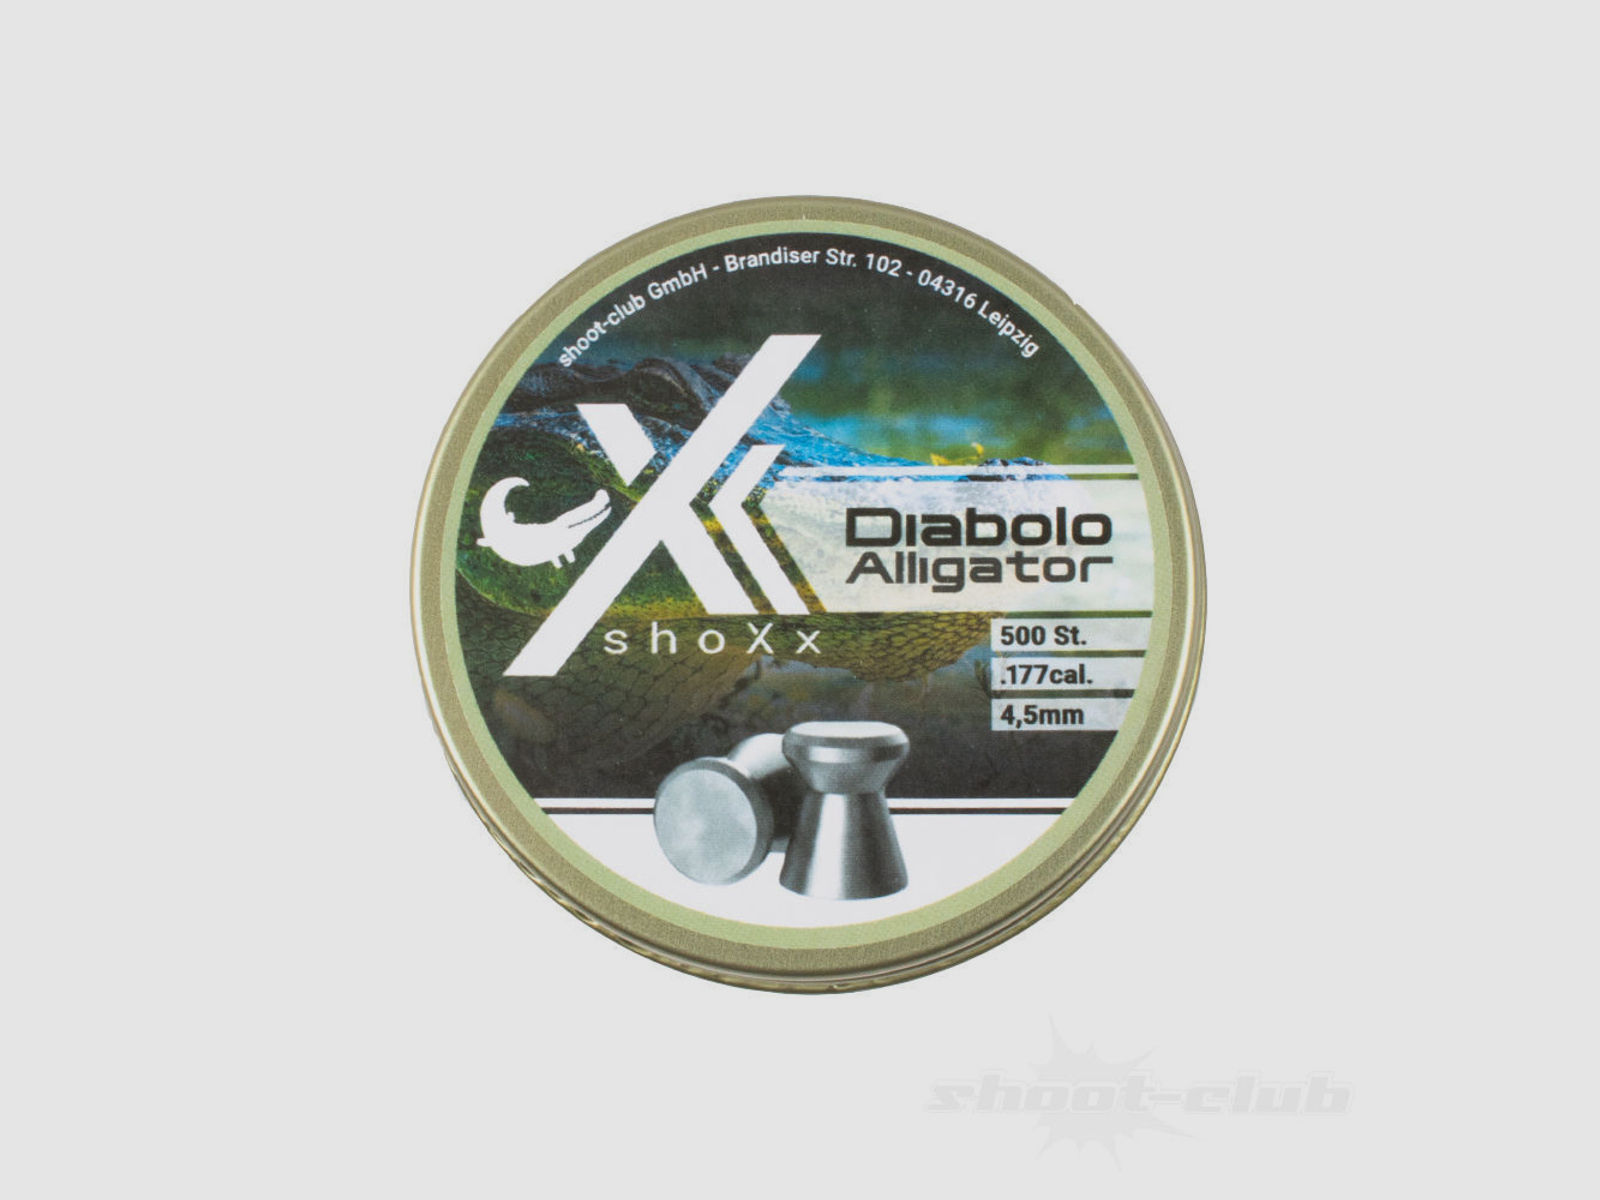 shoXx Alligator Flachkopf Diabolos 4,5mm für Trommelmagazine 0,45g